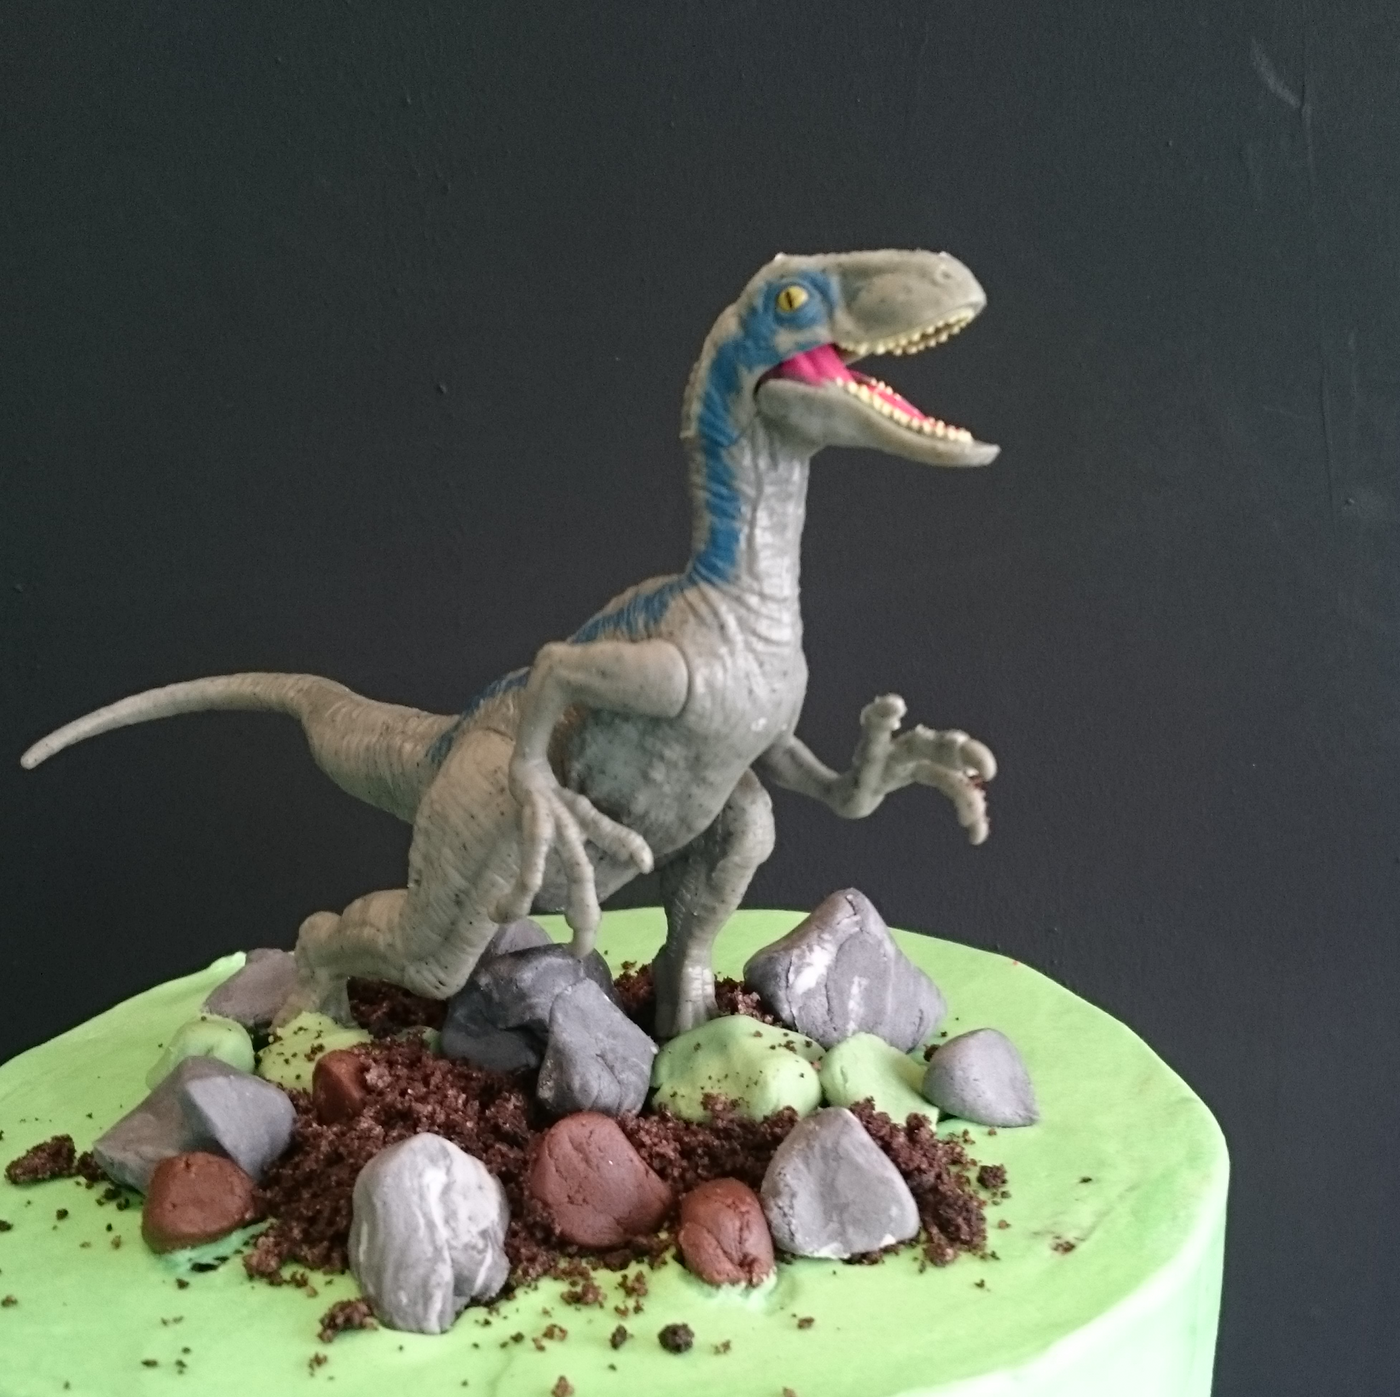 Jurassic Park - Dinosaur Cake - Jurassic World Cake